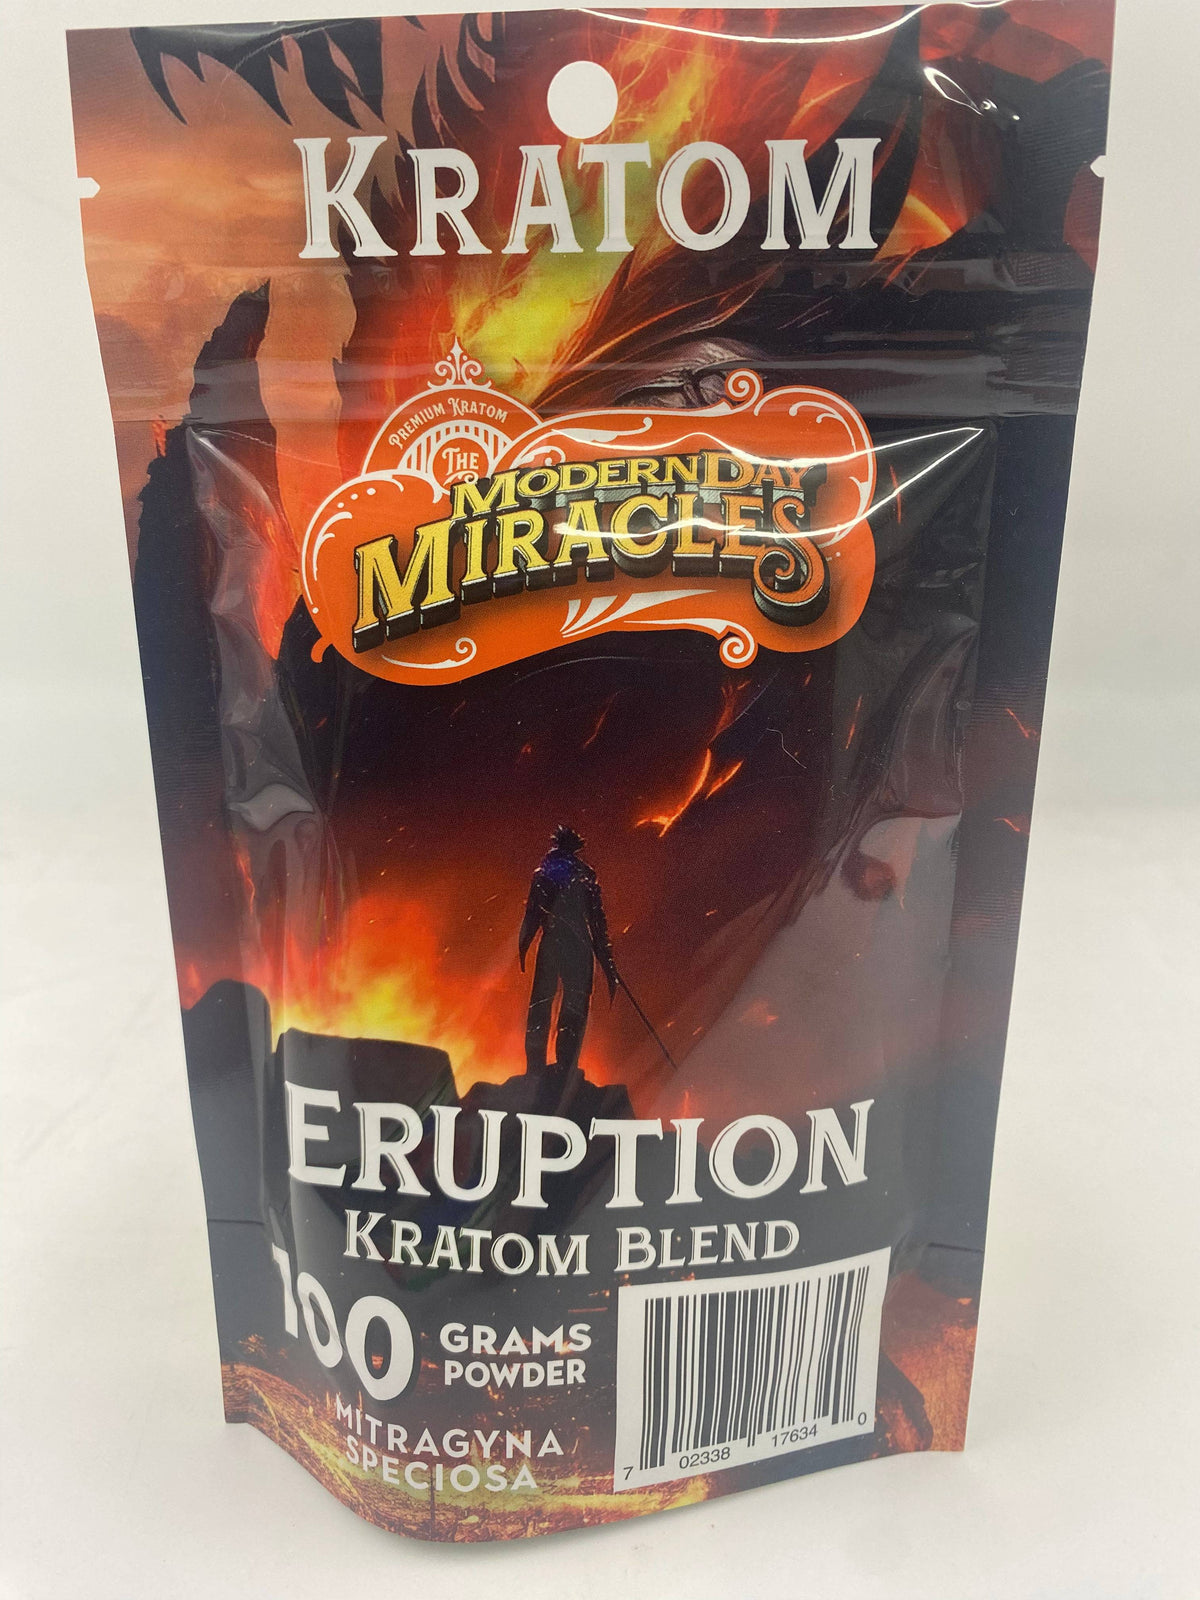 Modern Day Miracles Space Blends-Eruption Maeng Da Kratom Bali Blend 100 Gram Powder